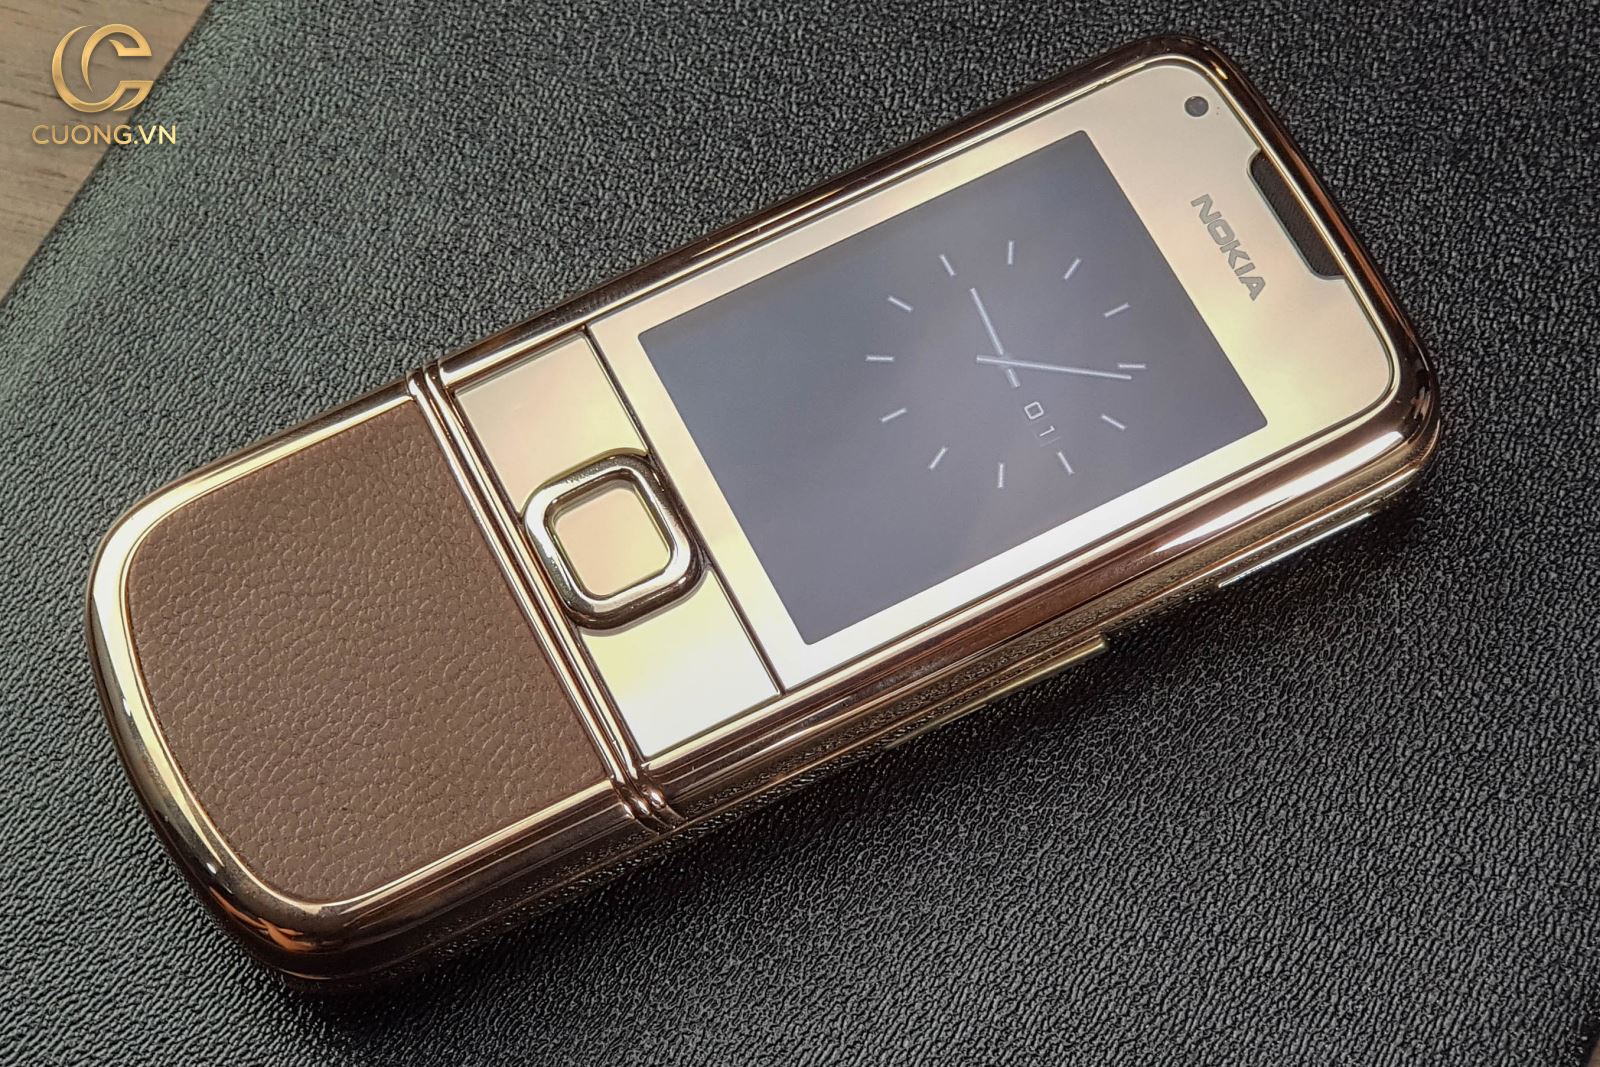 Nokia 8800 vàng hồng nâu gold